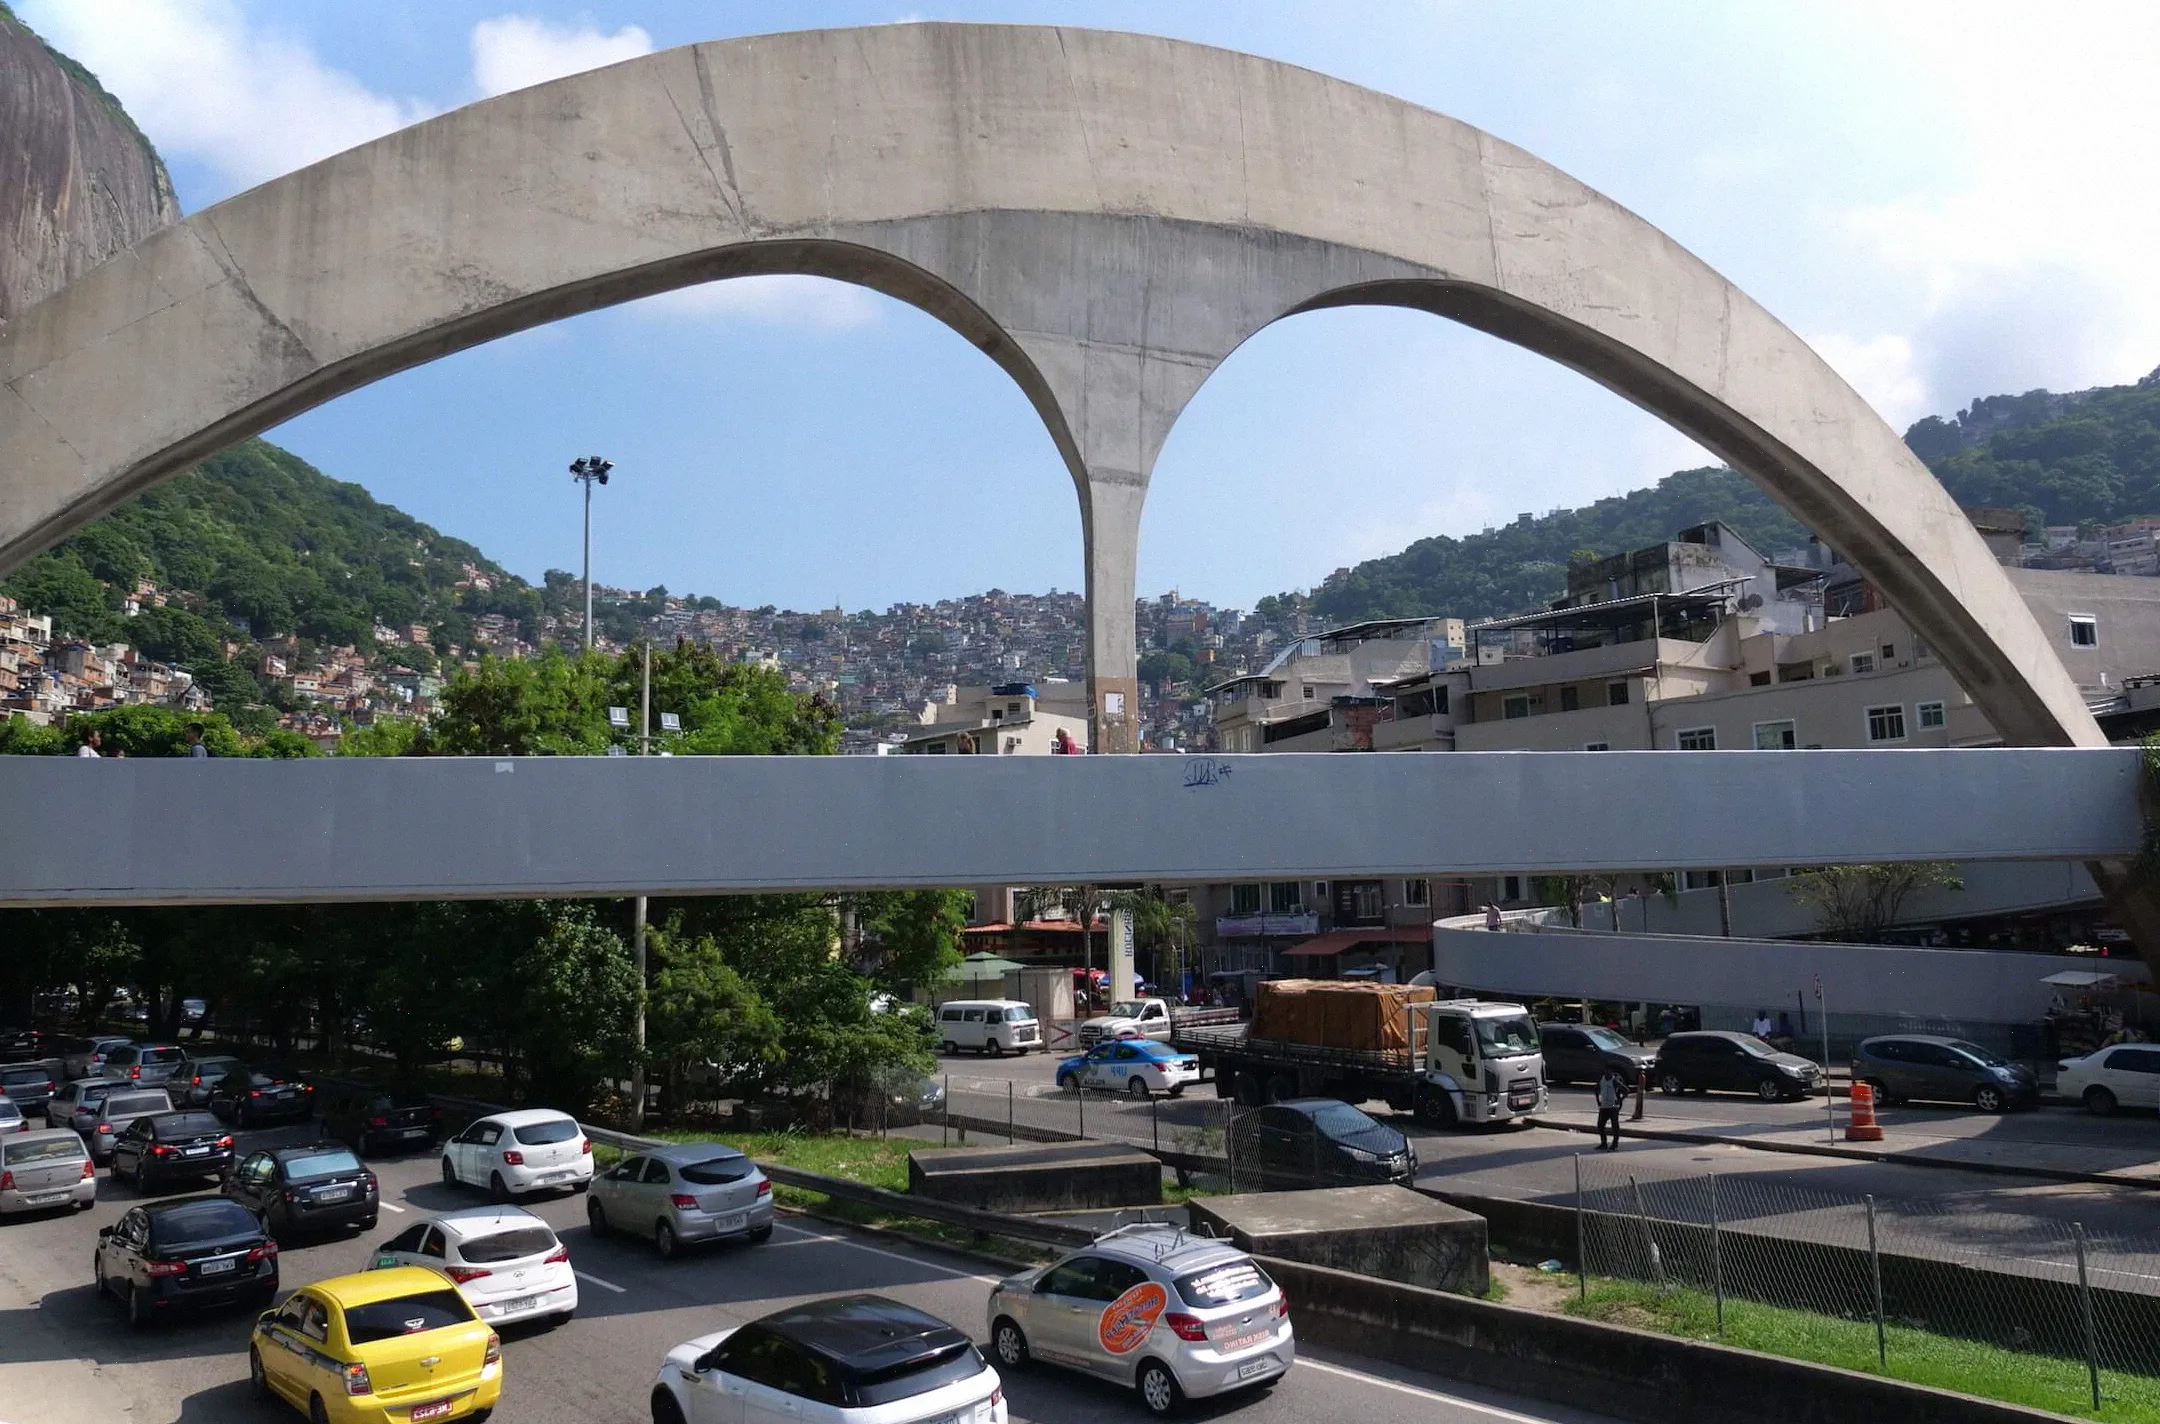 Toma un autobús o un taxi y bájate cuando veas este enorme arco sobre la entrada a la favela de Rocinha.